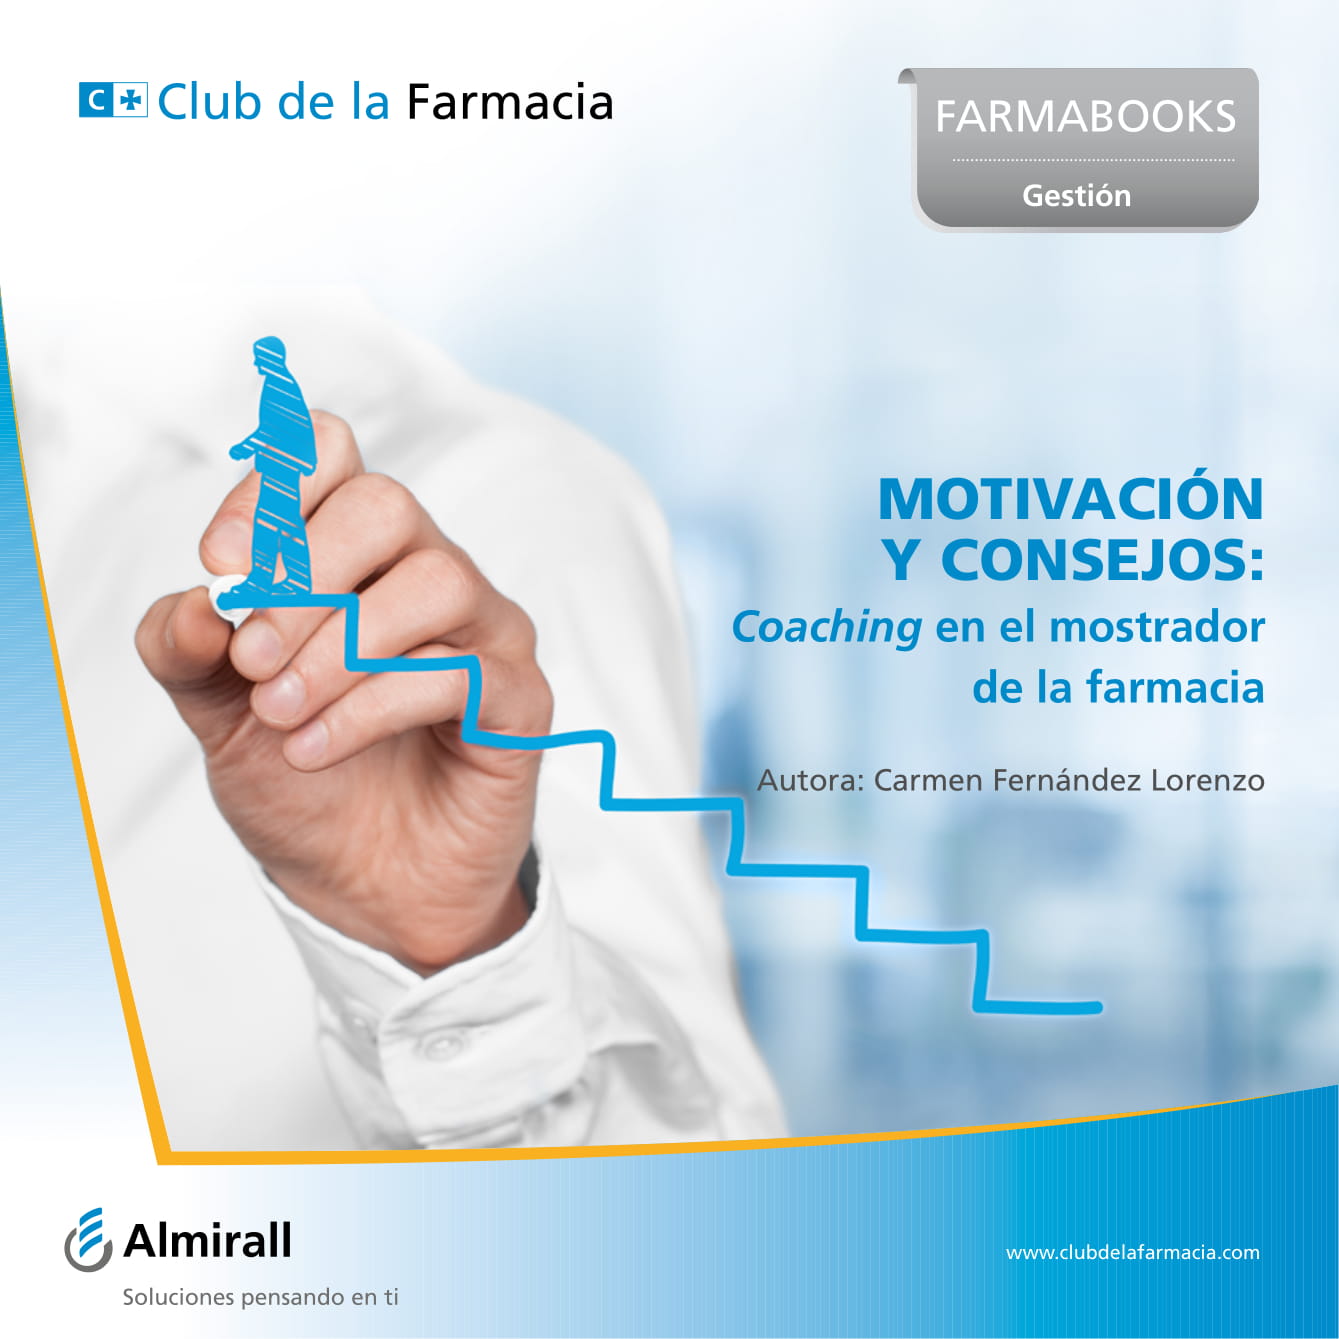 Ebooks-Club de la Farmacia-12.jpg